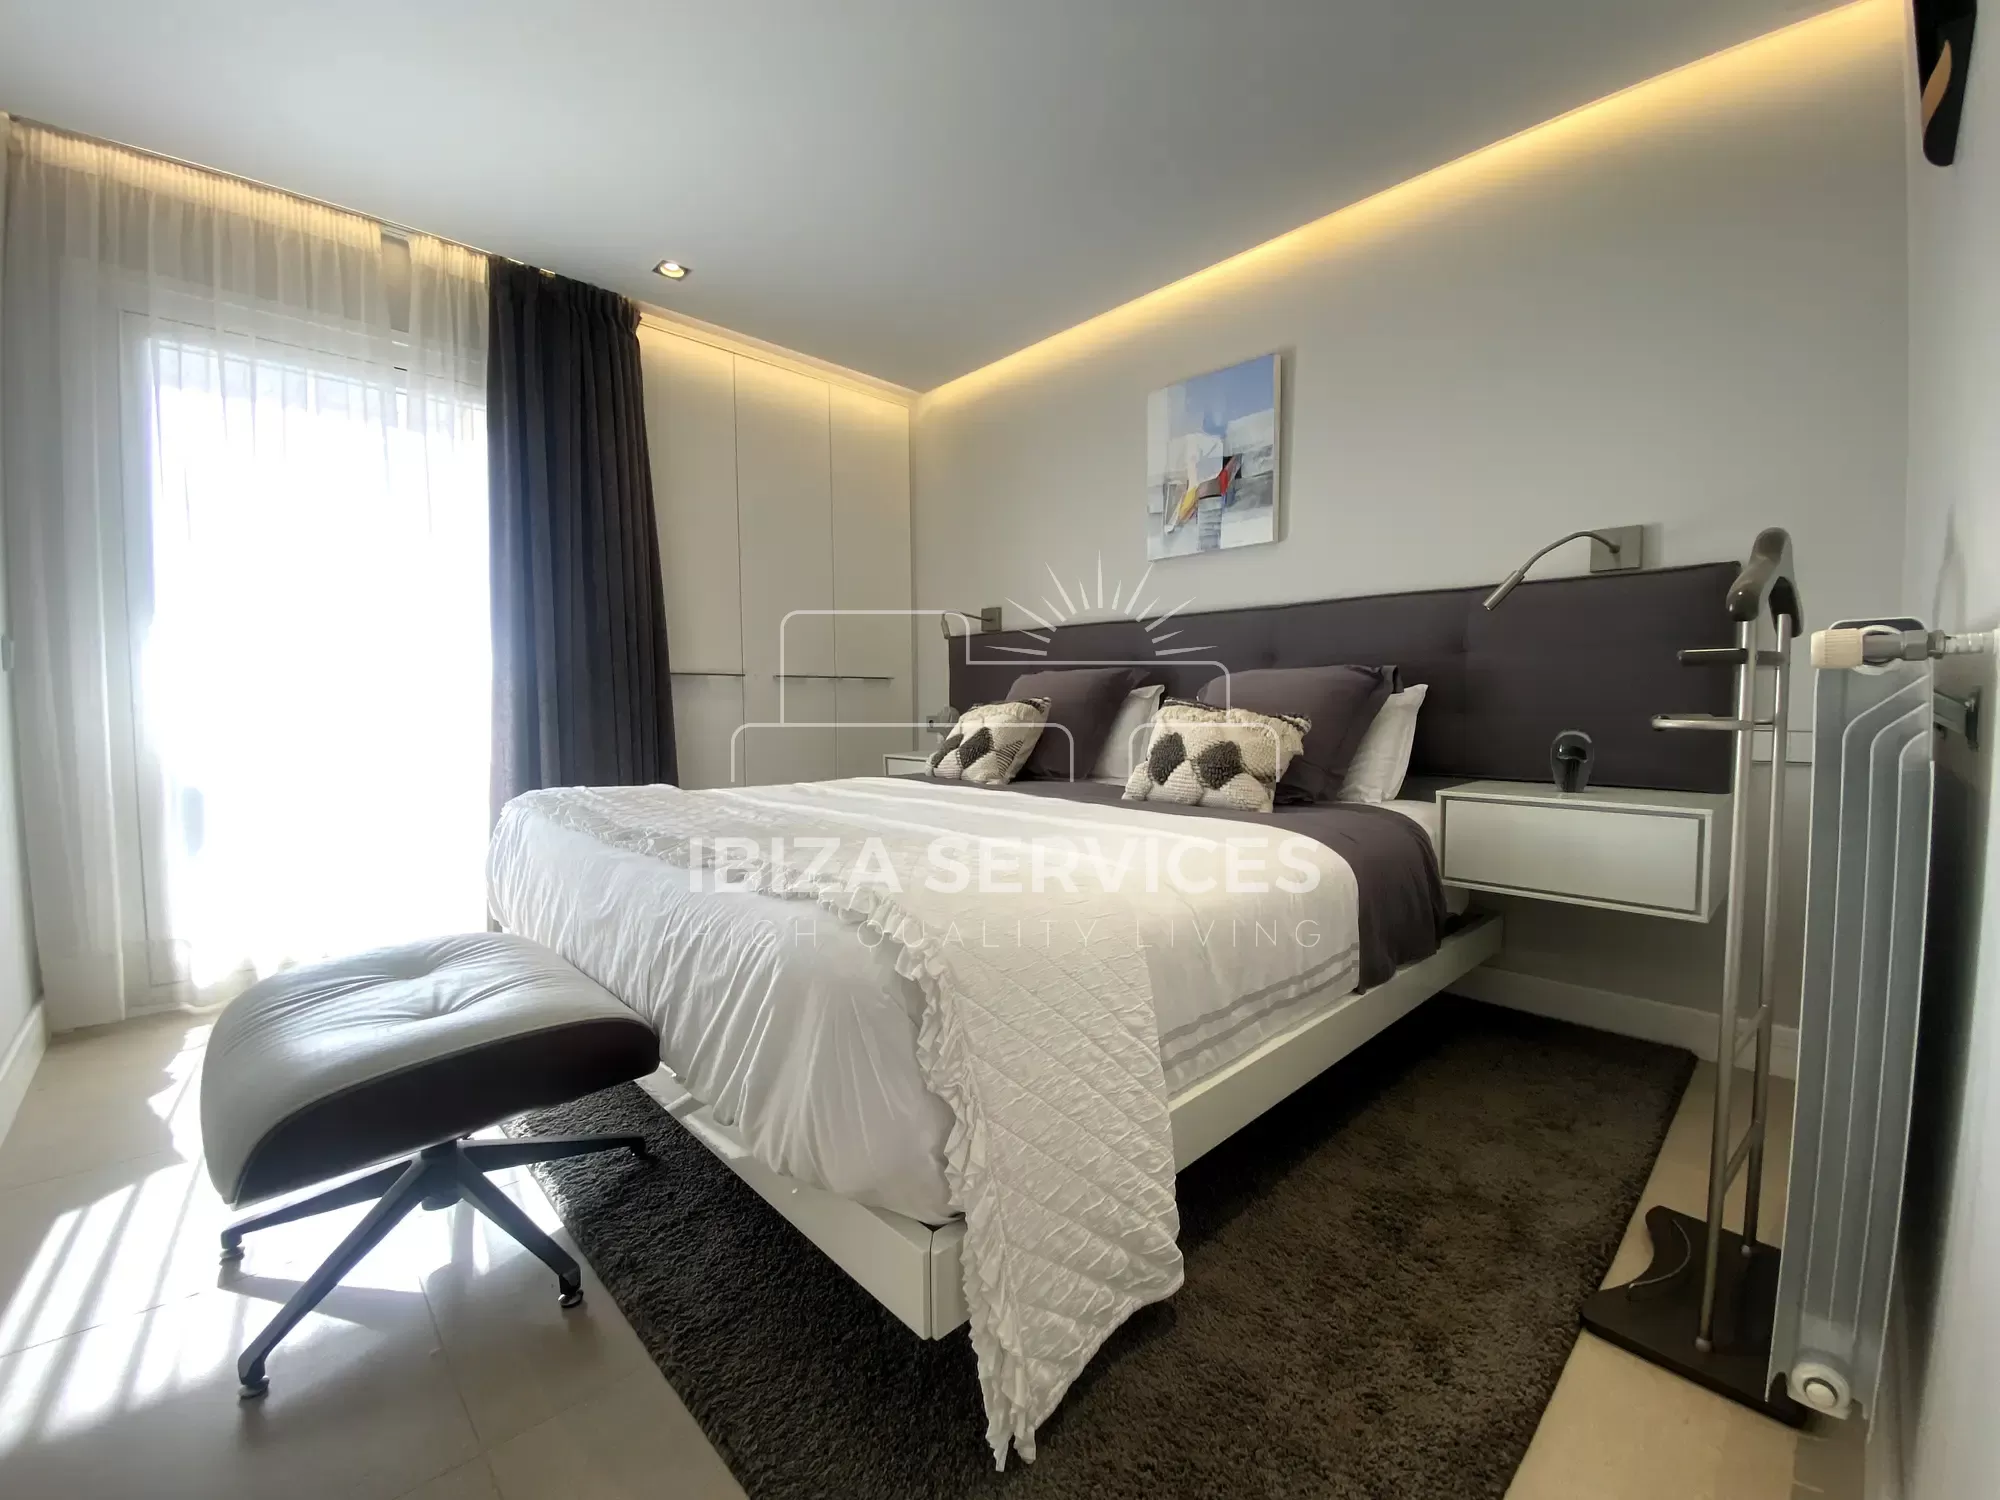 Exclusivo Apartamento en Marina Botafoch de 5 dormitorios en venta